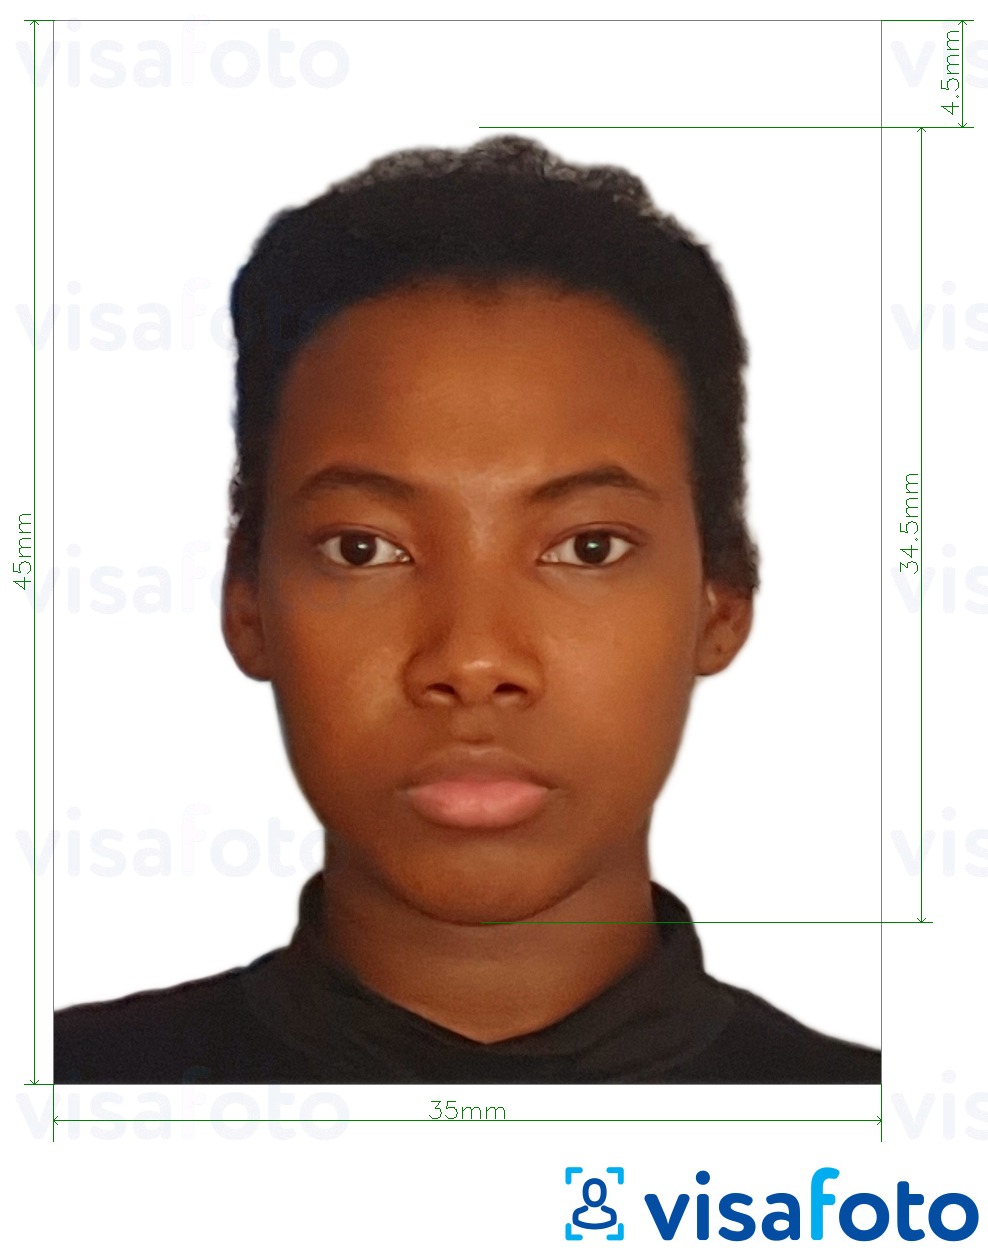 نمونه ی یک عکس برای پاسپورت نیجریه 35x45 میلی متر با مشخصات دقیق